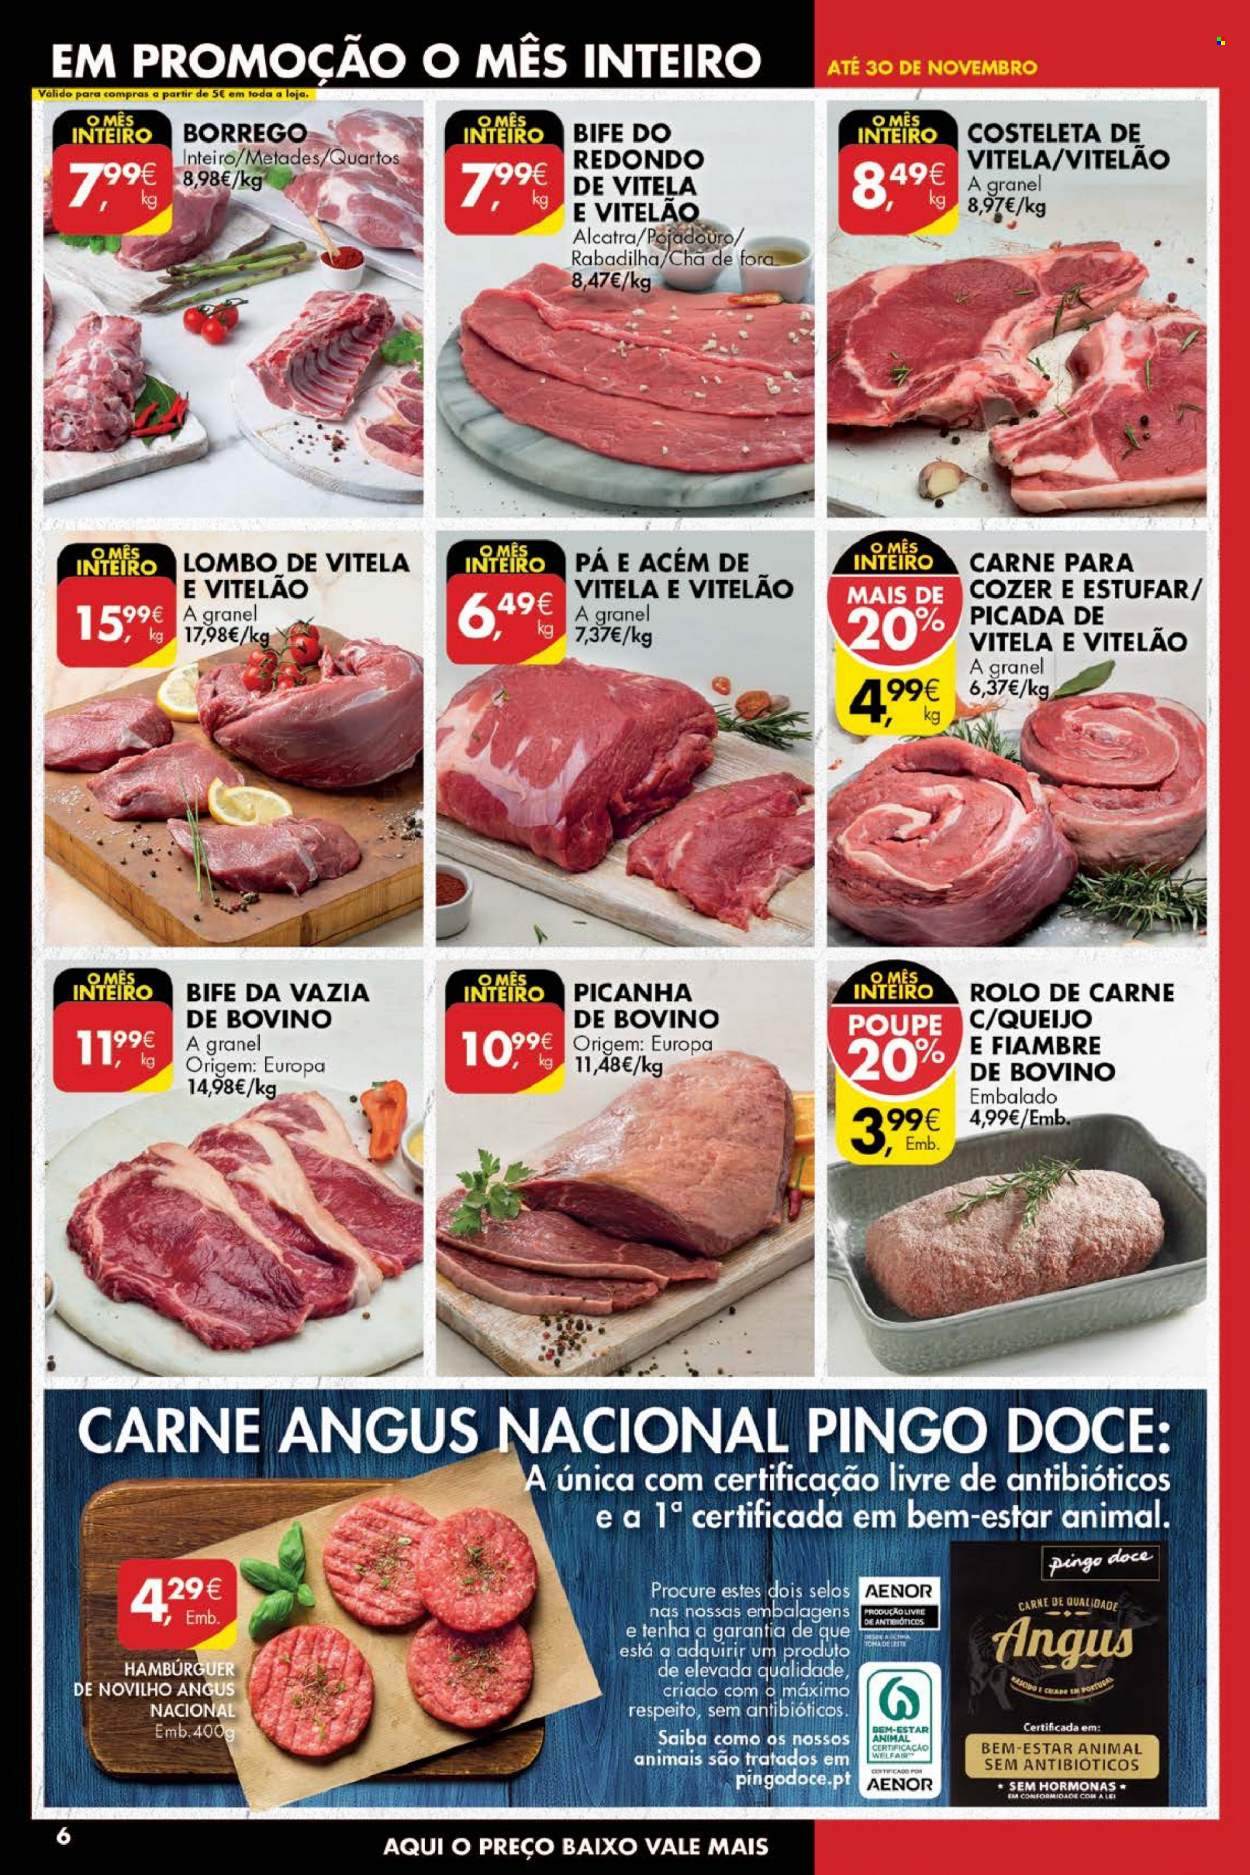 thumbnail - Folheto Pingo Doce - 16.11.2021 - 22.11.2021 - Produtos em promoção - picanha, lombo, rolo de carne, alcatra, vazia de bovino, carne de novilho, hamburger, chá. Página 6.